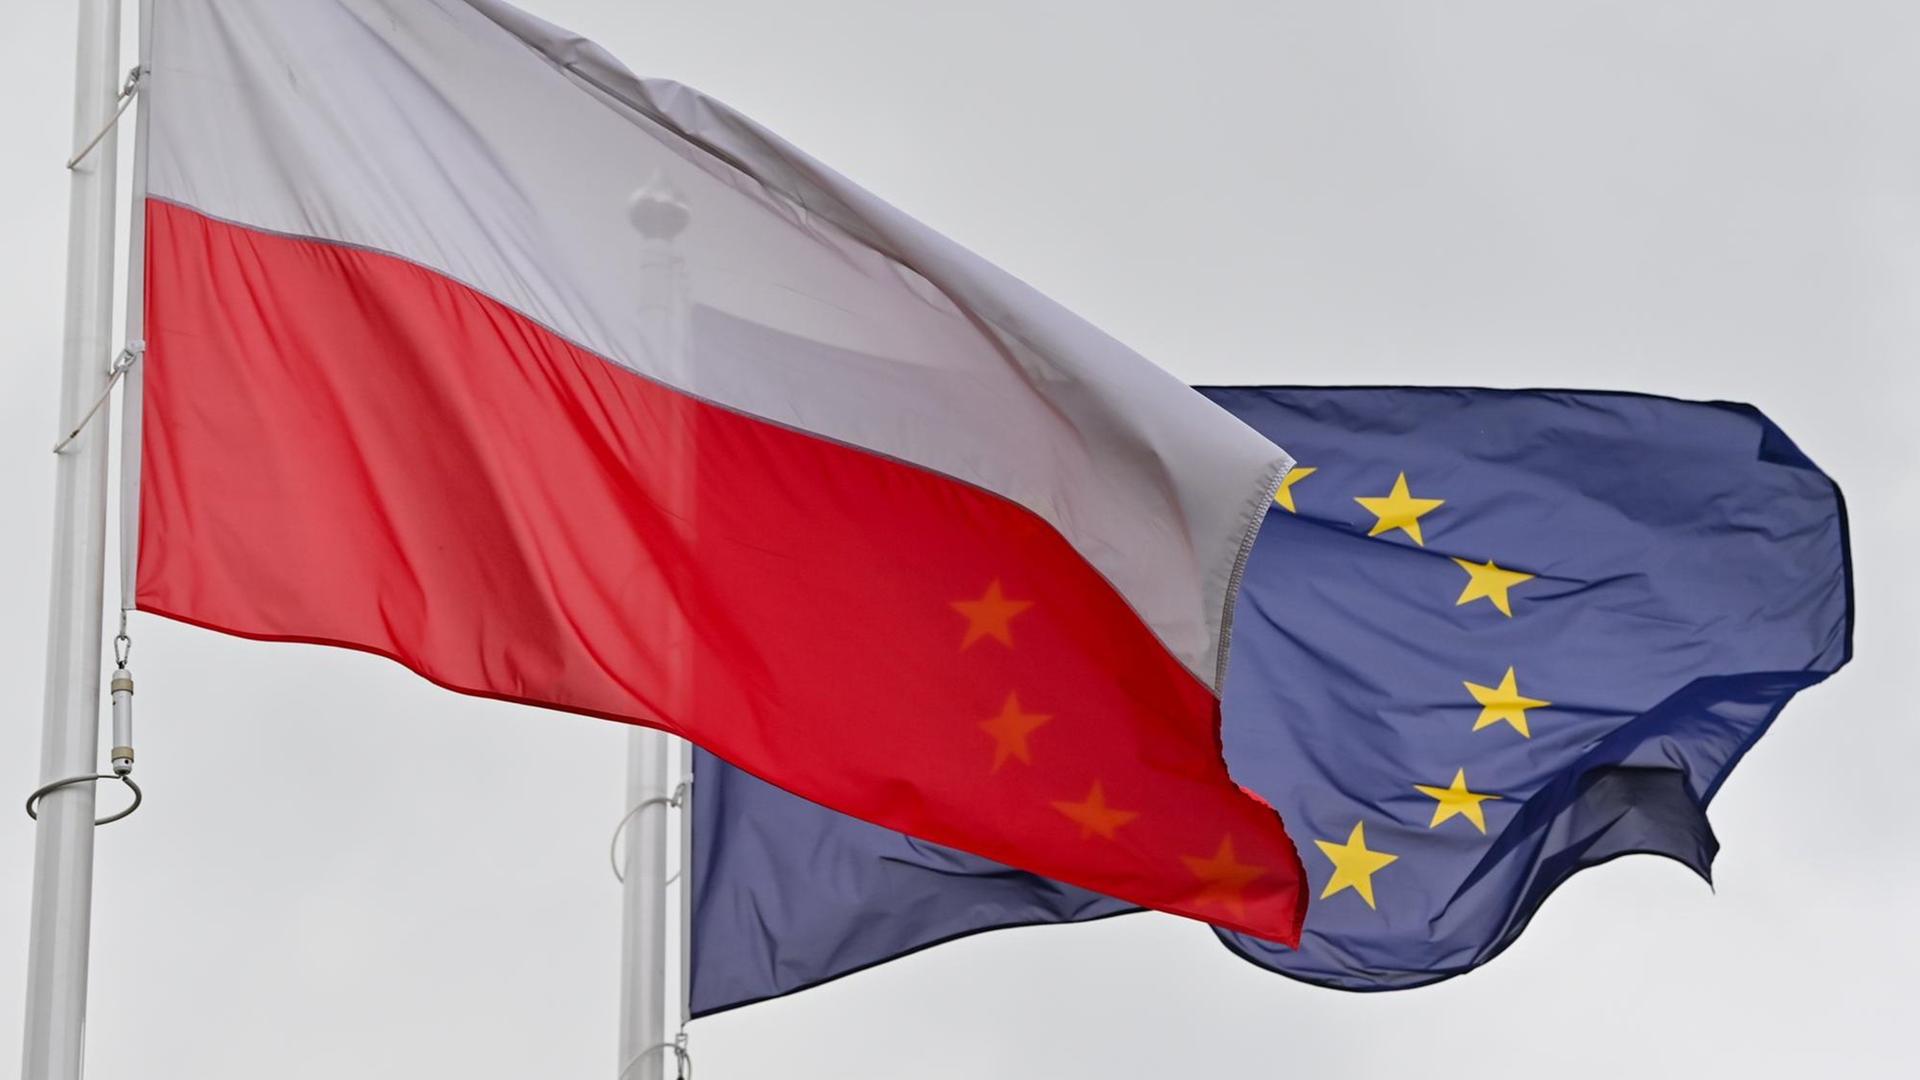 Die weiß-rote Nationalfahne Polens und dahinter die Fahne der Europäischen Union (EU) wehen im Wind.